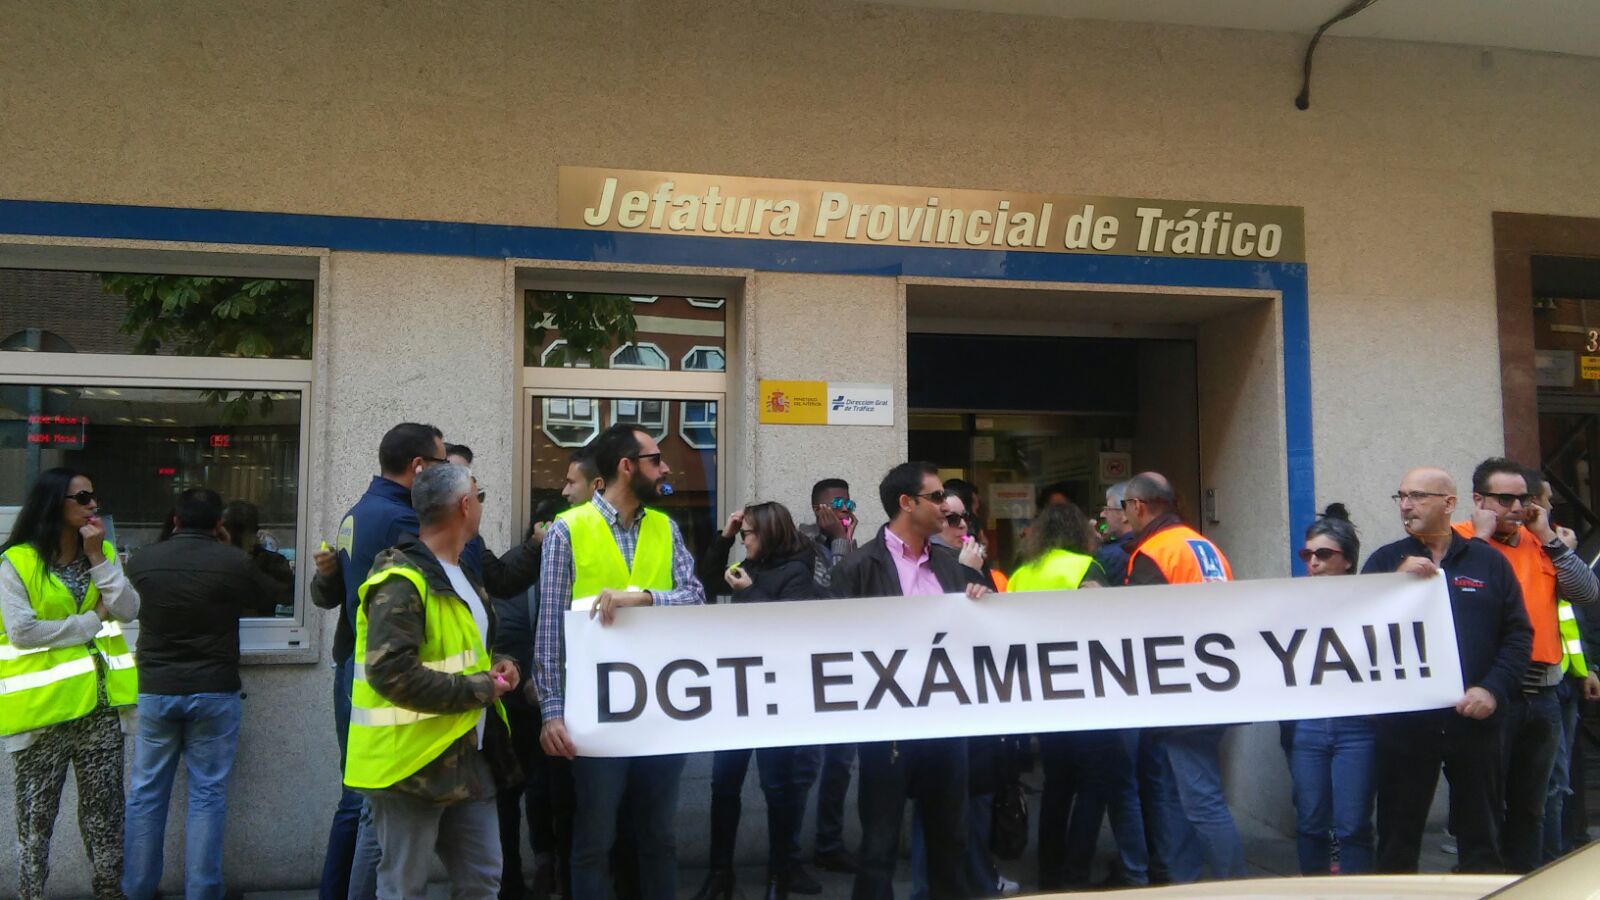 Profesores de autoescuelas zamoranas protestan por la falta de soluciones ante la huelga de examinadores